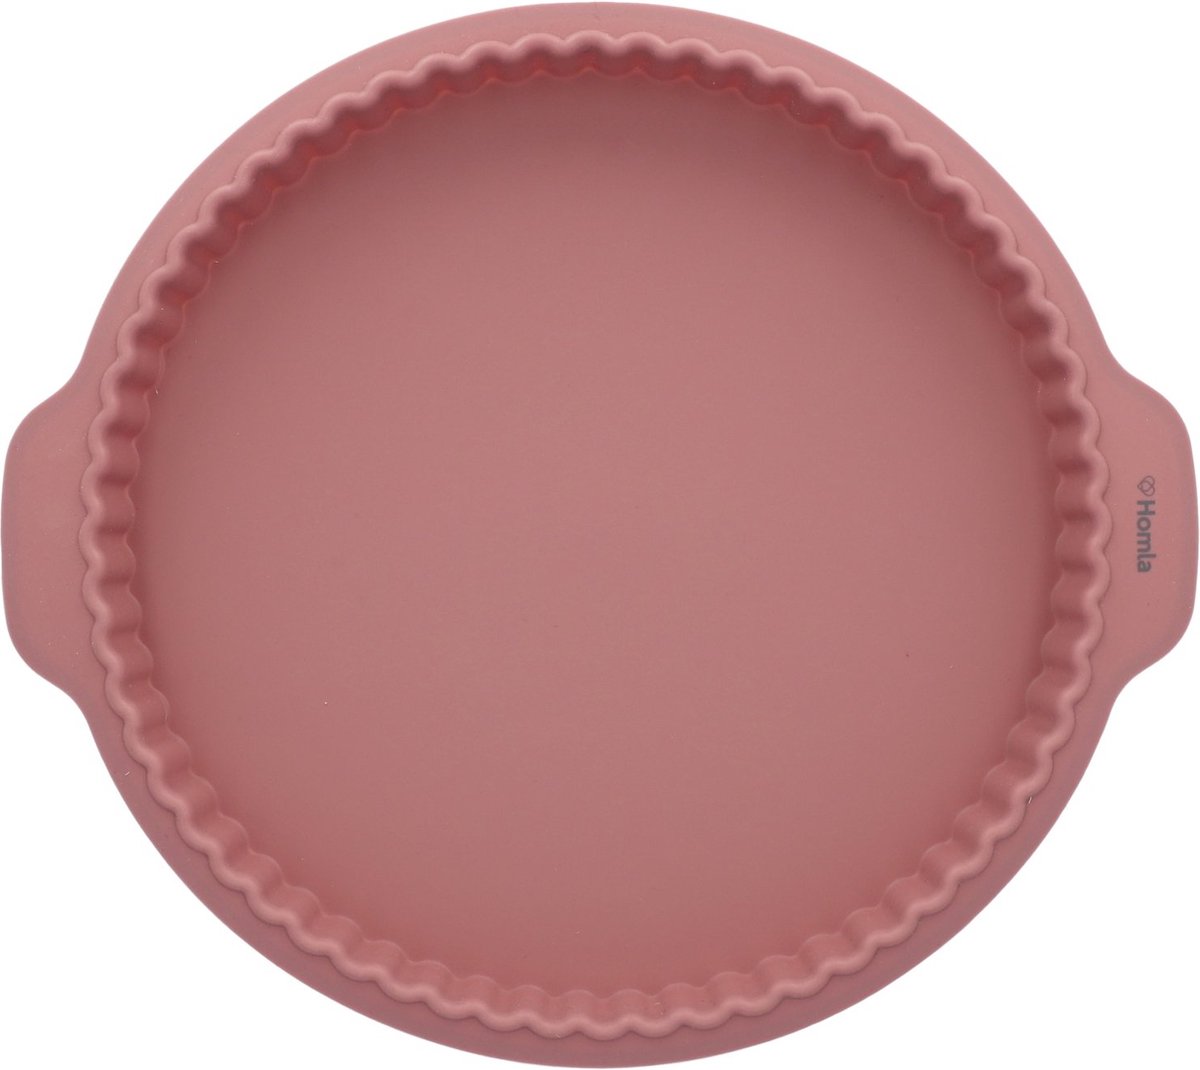 HOMLA Easy Bake Ronde Taartvorm Siliconen Vorm voor het bakken van Quichevorm - Vaatwasmachinebestendig Roze 31 cm